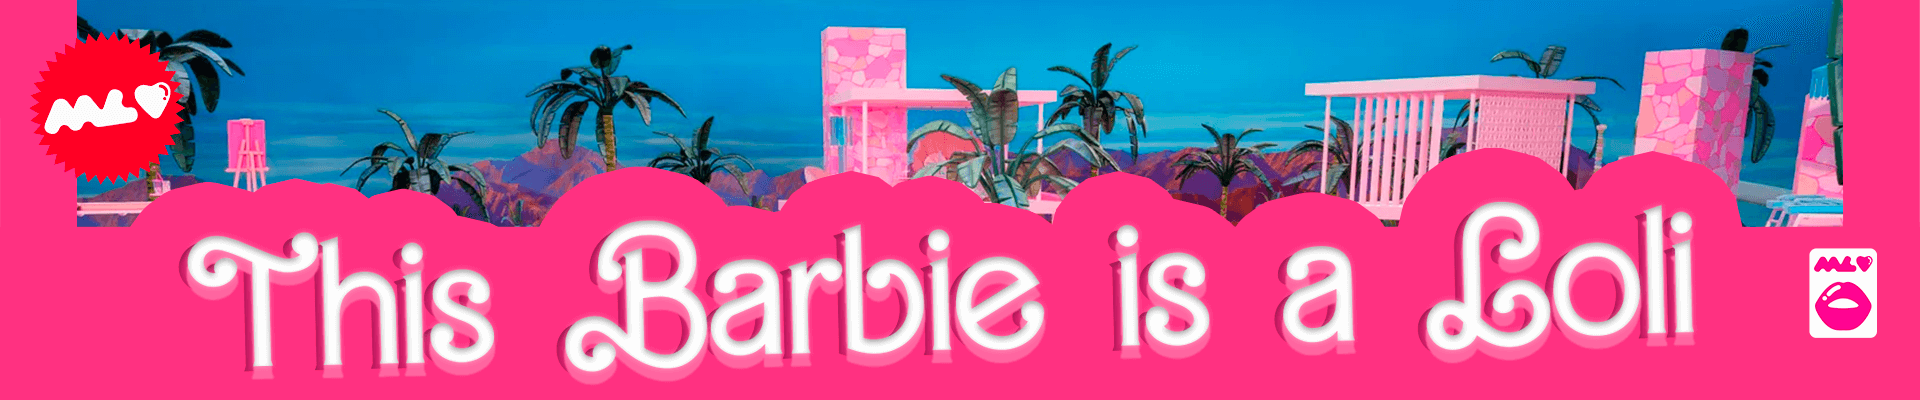 Barbiecore - desktop